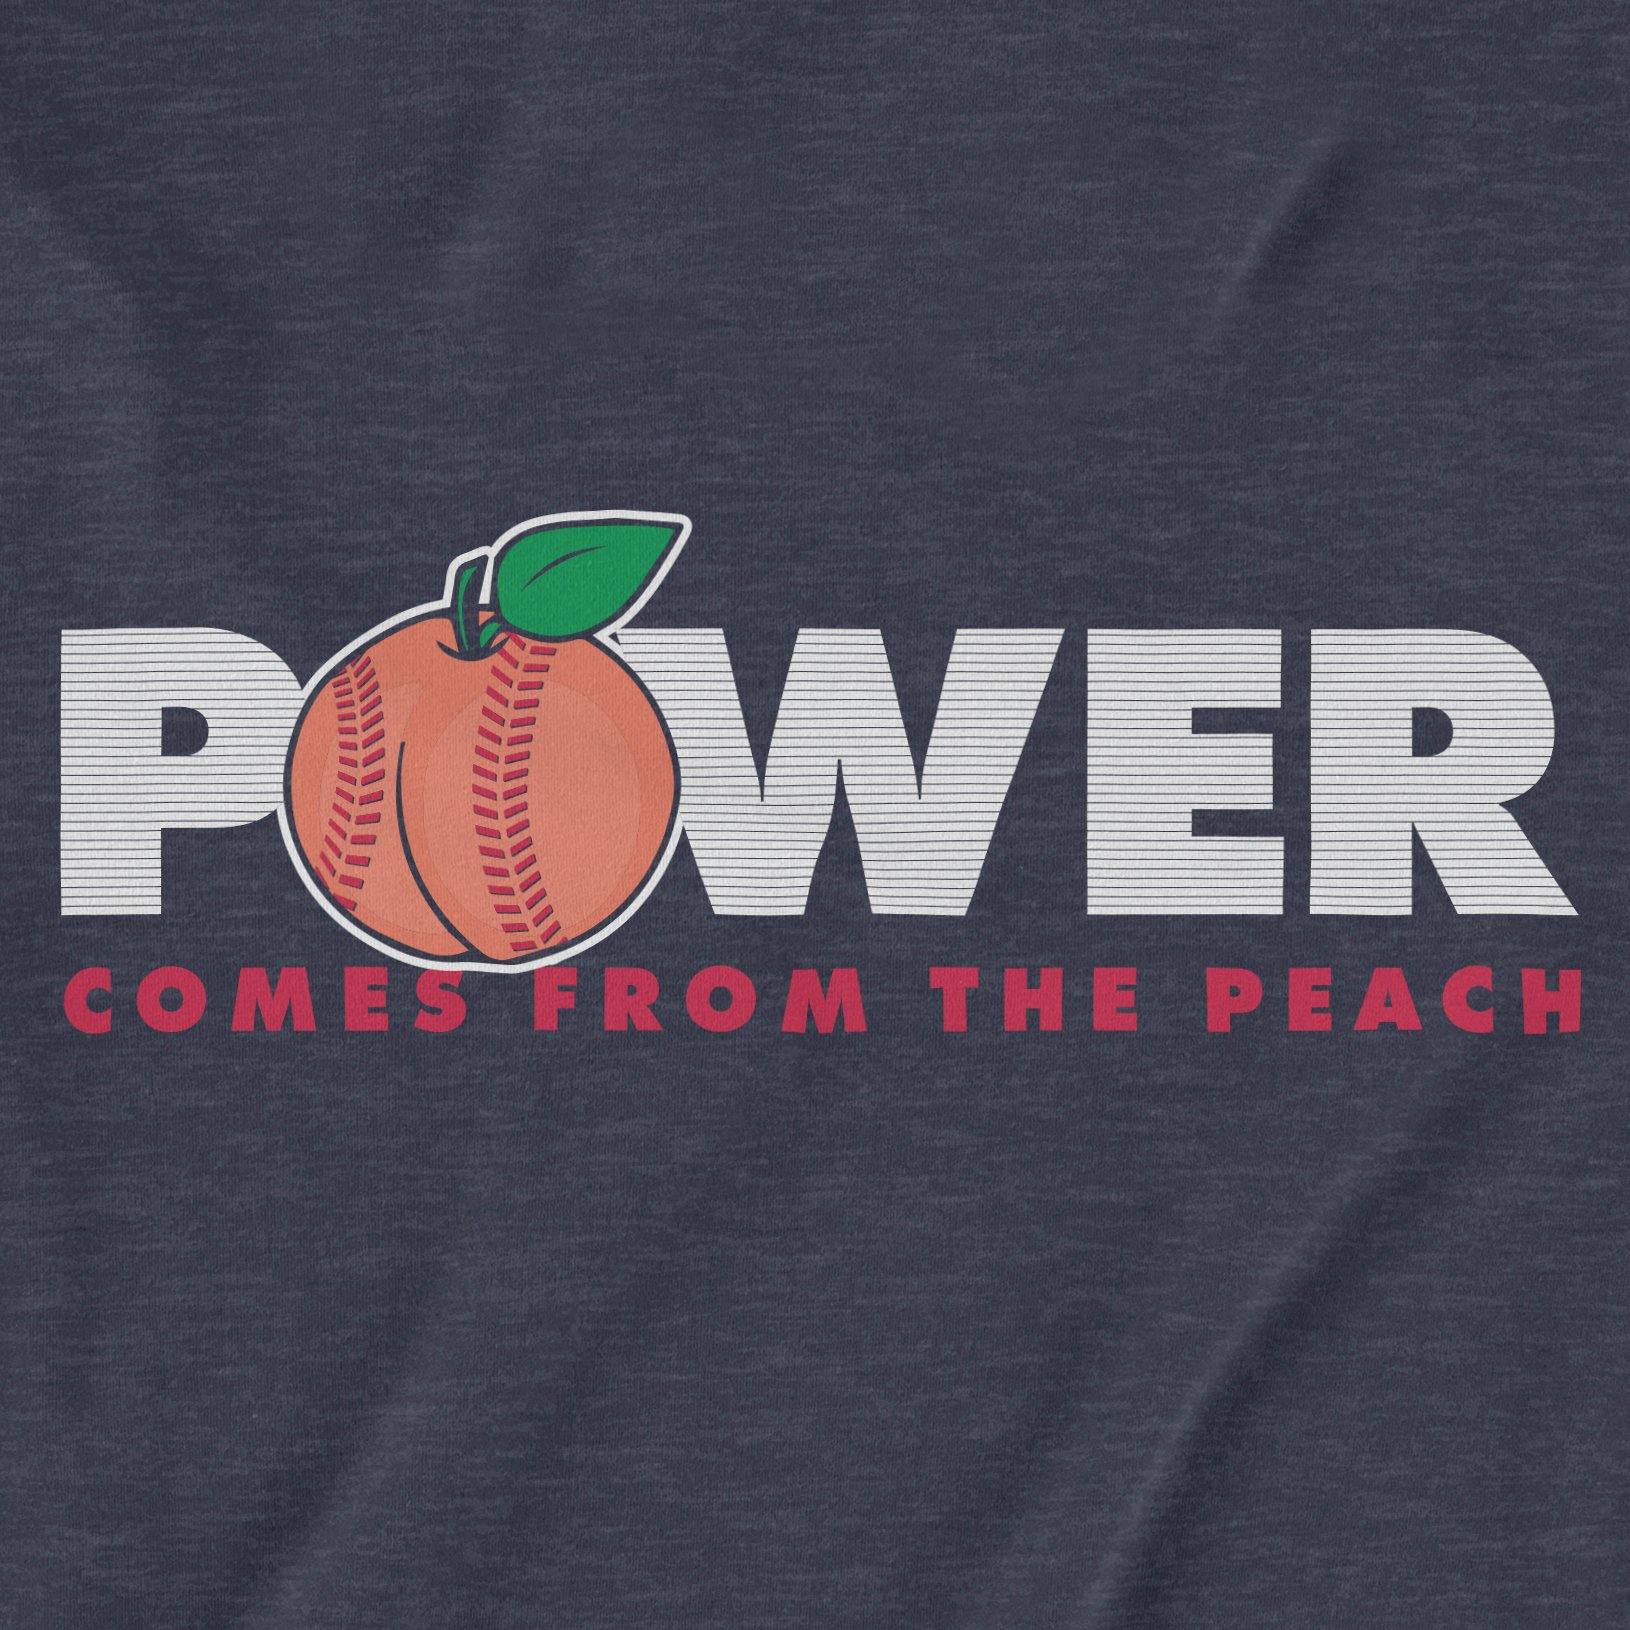 Peach Power | T-Shirt - Jomboy Media